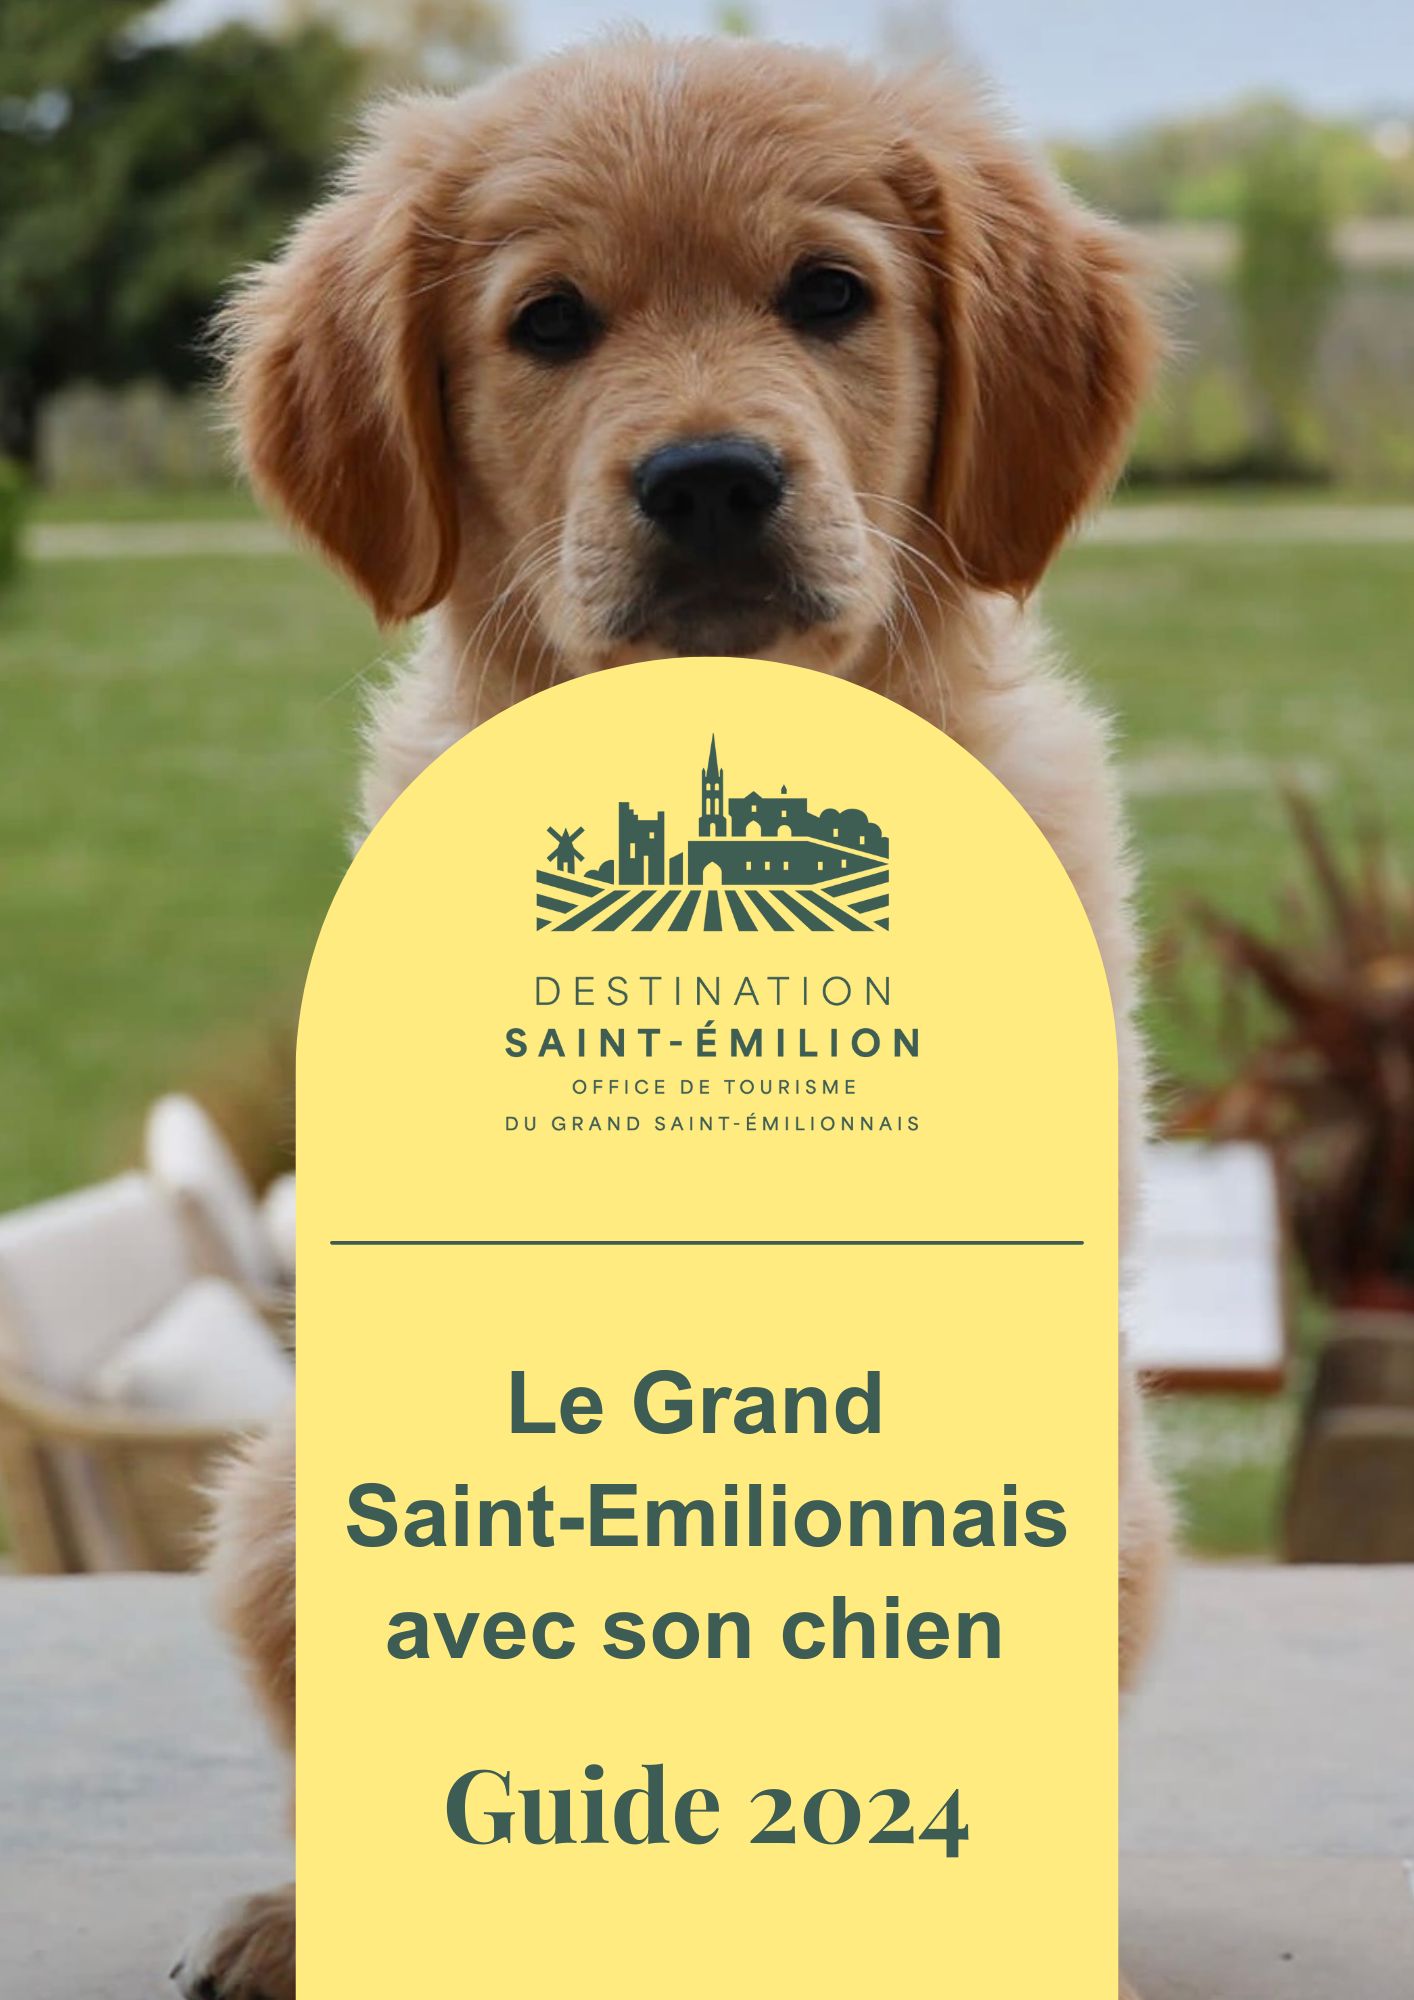 Guia 2024 - A região do Grande Saint-Emilion com o seu cão